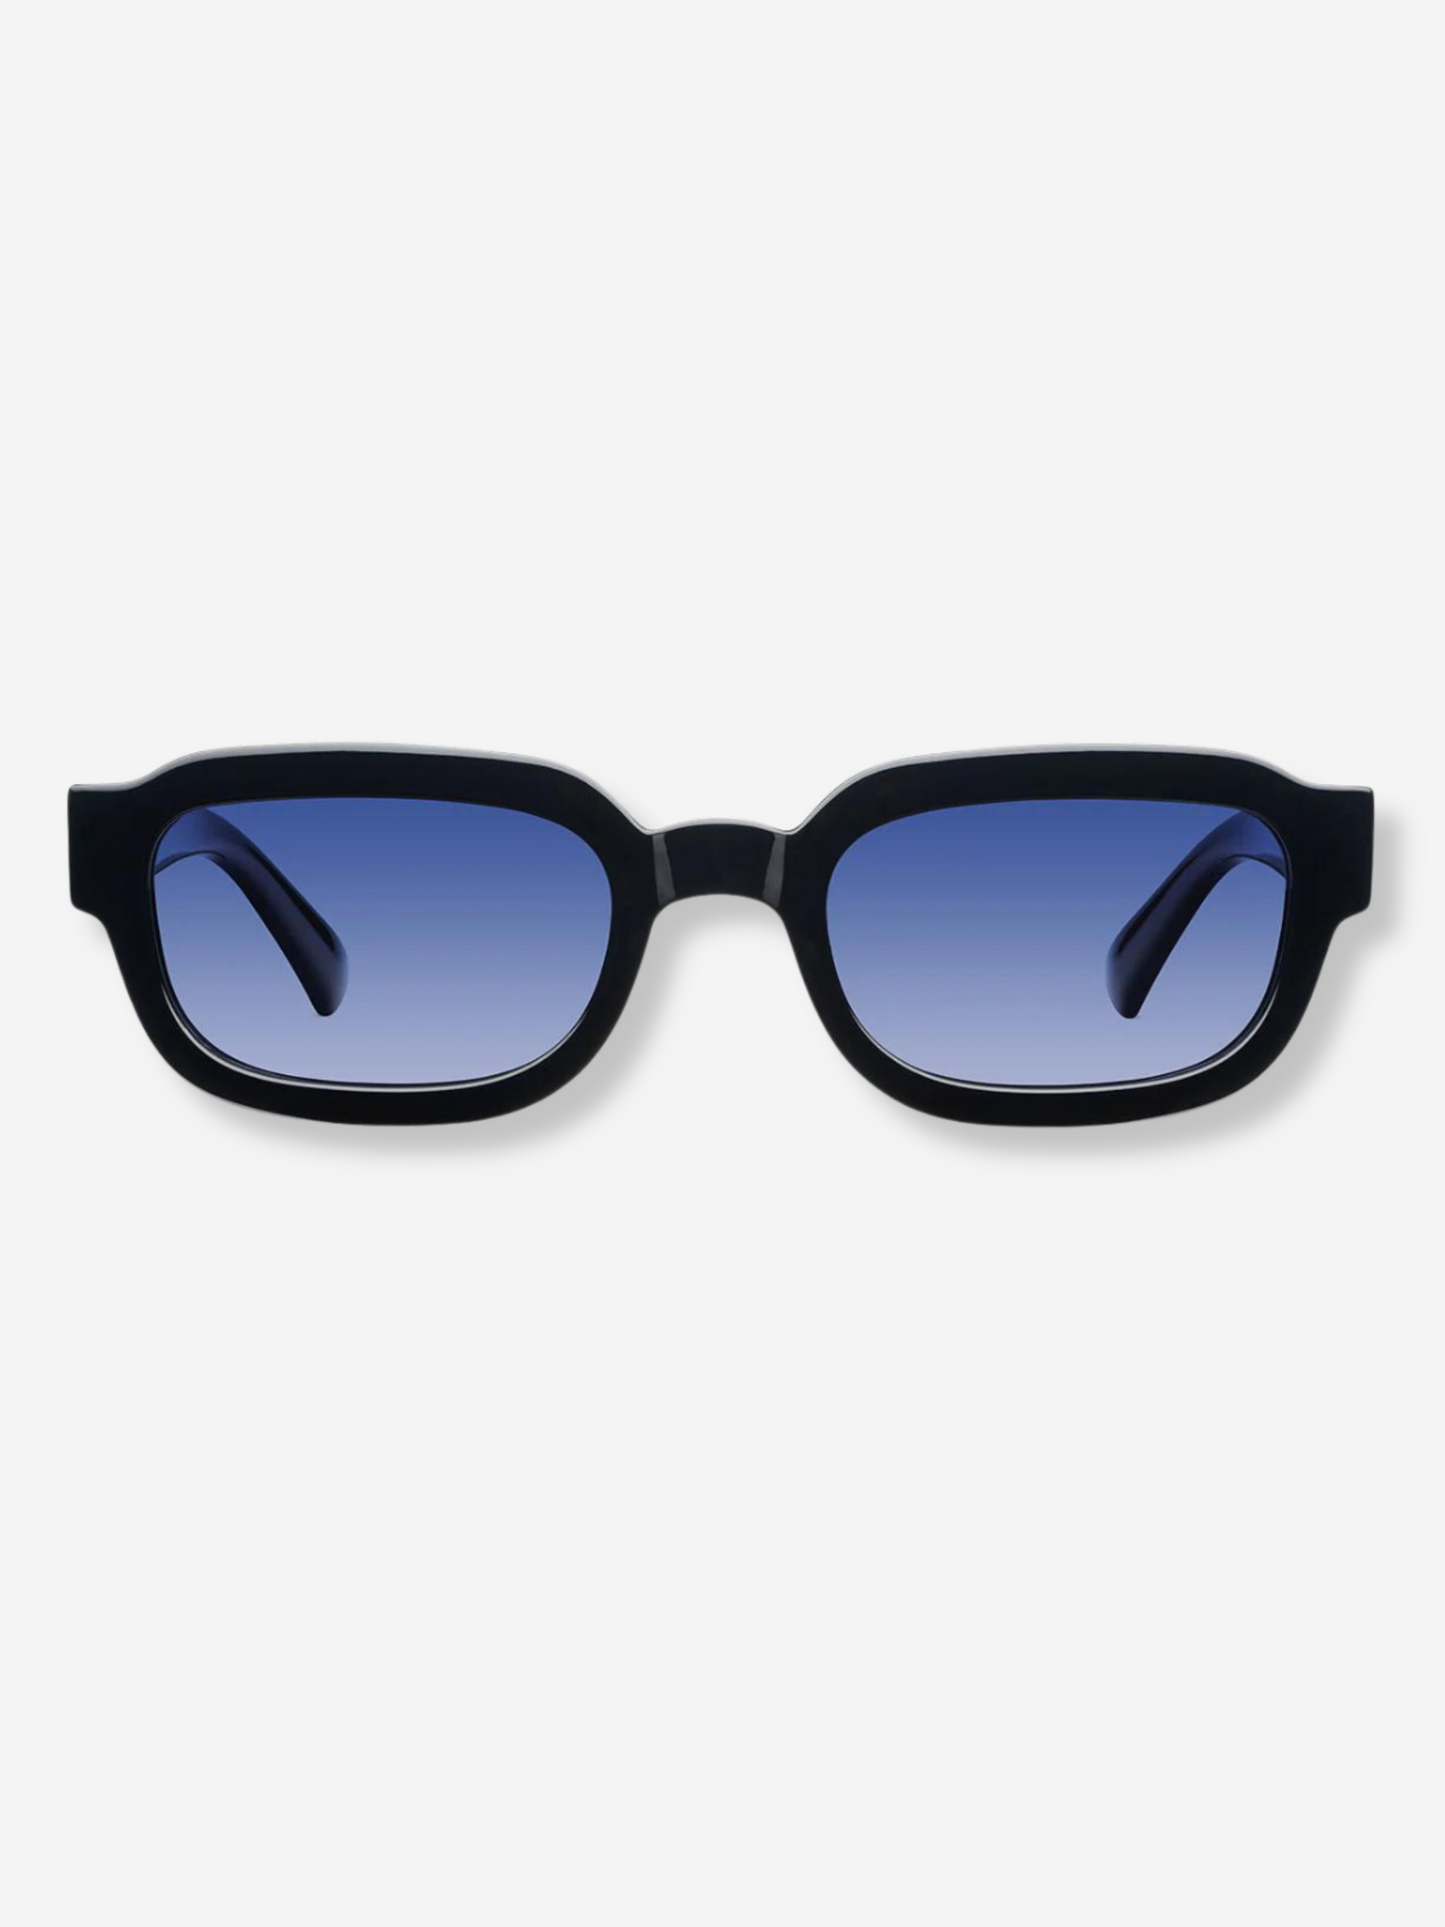 Jamil Black Azure Sunglasses